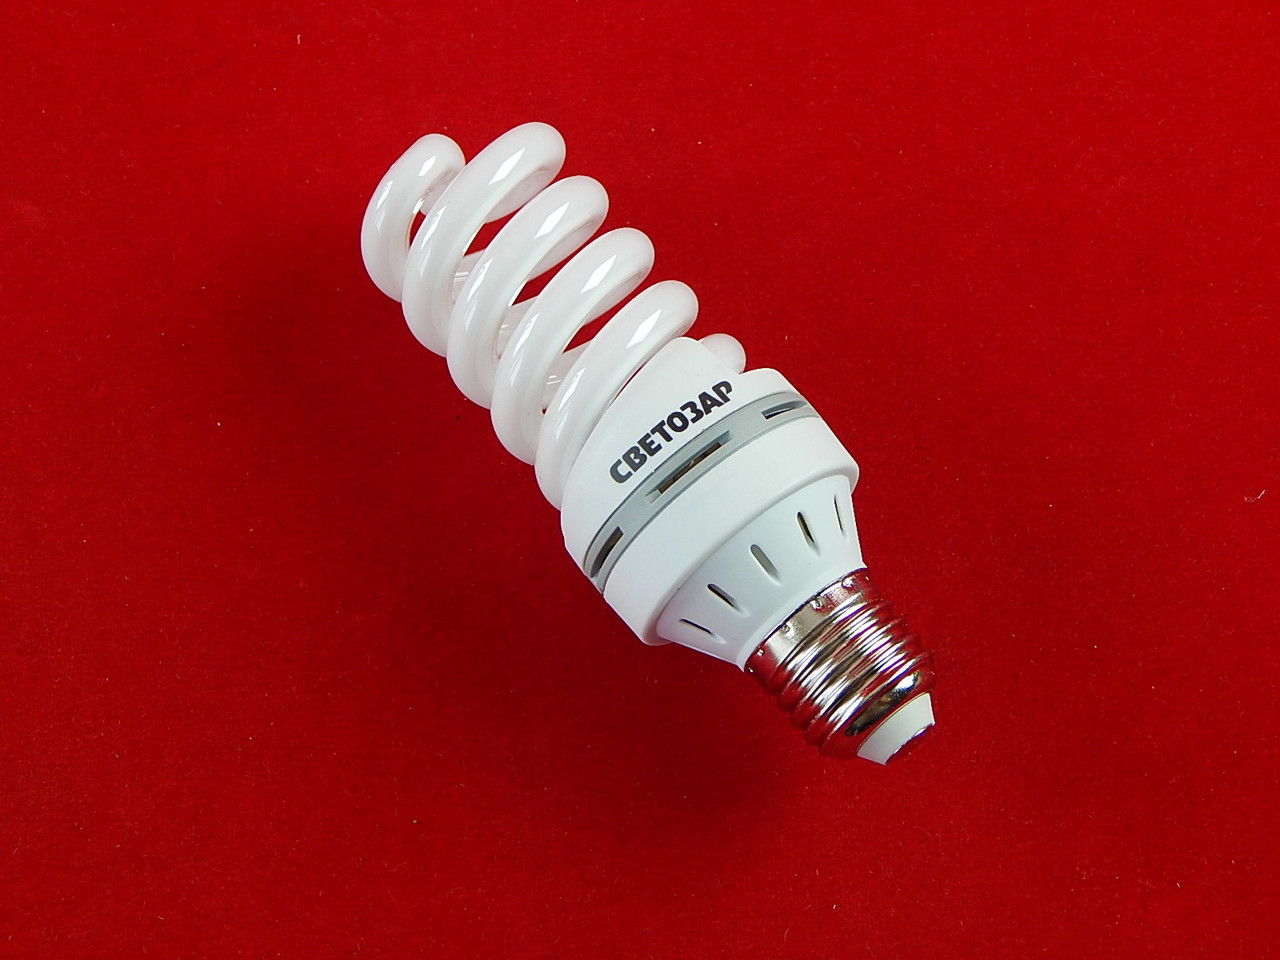 Энергосберегающая лампа СВЕТОЗАР 'ЭКОНОМ' спираль,цоколь E27(стандарт),Т3,яркий белый